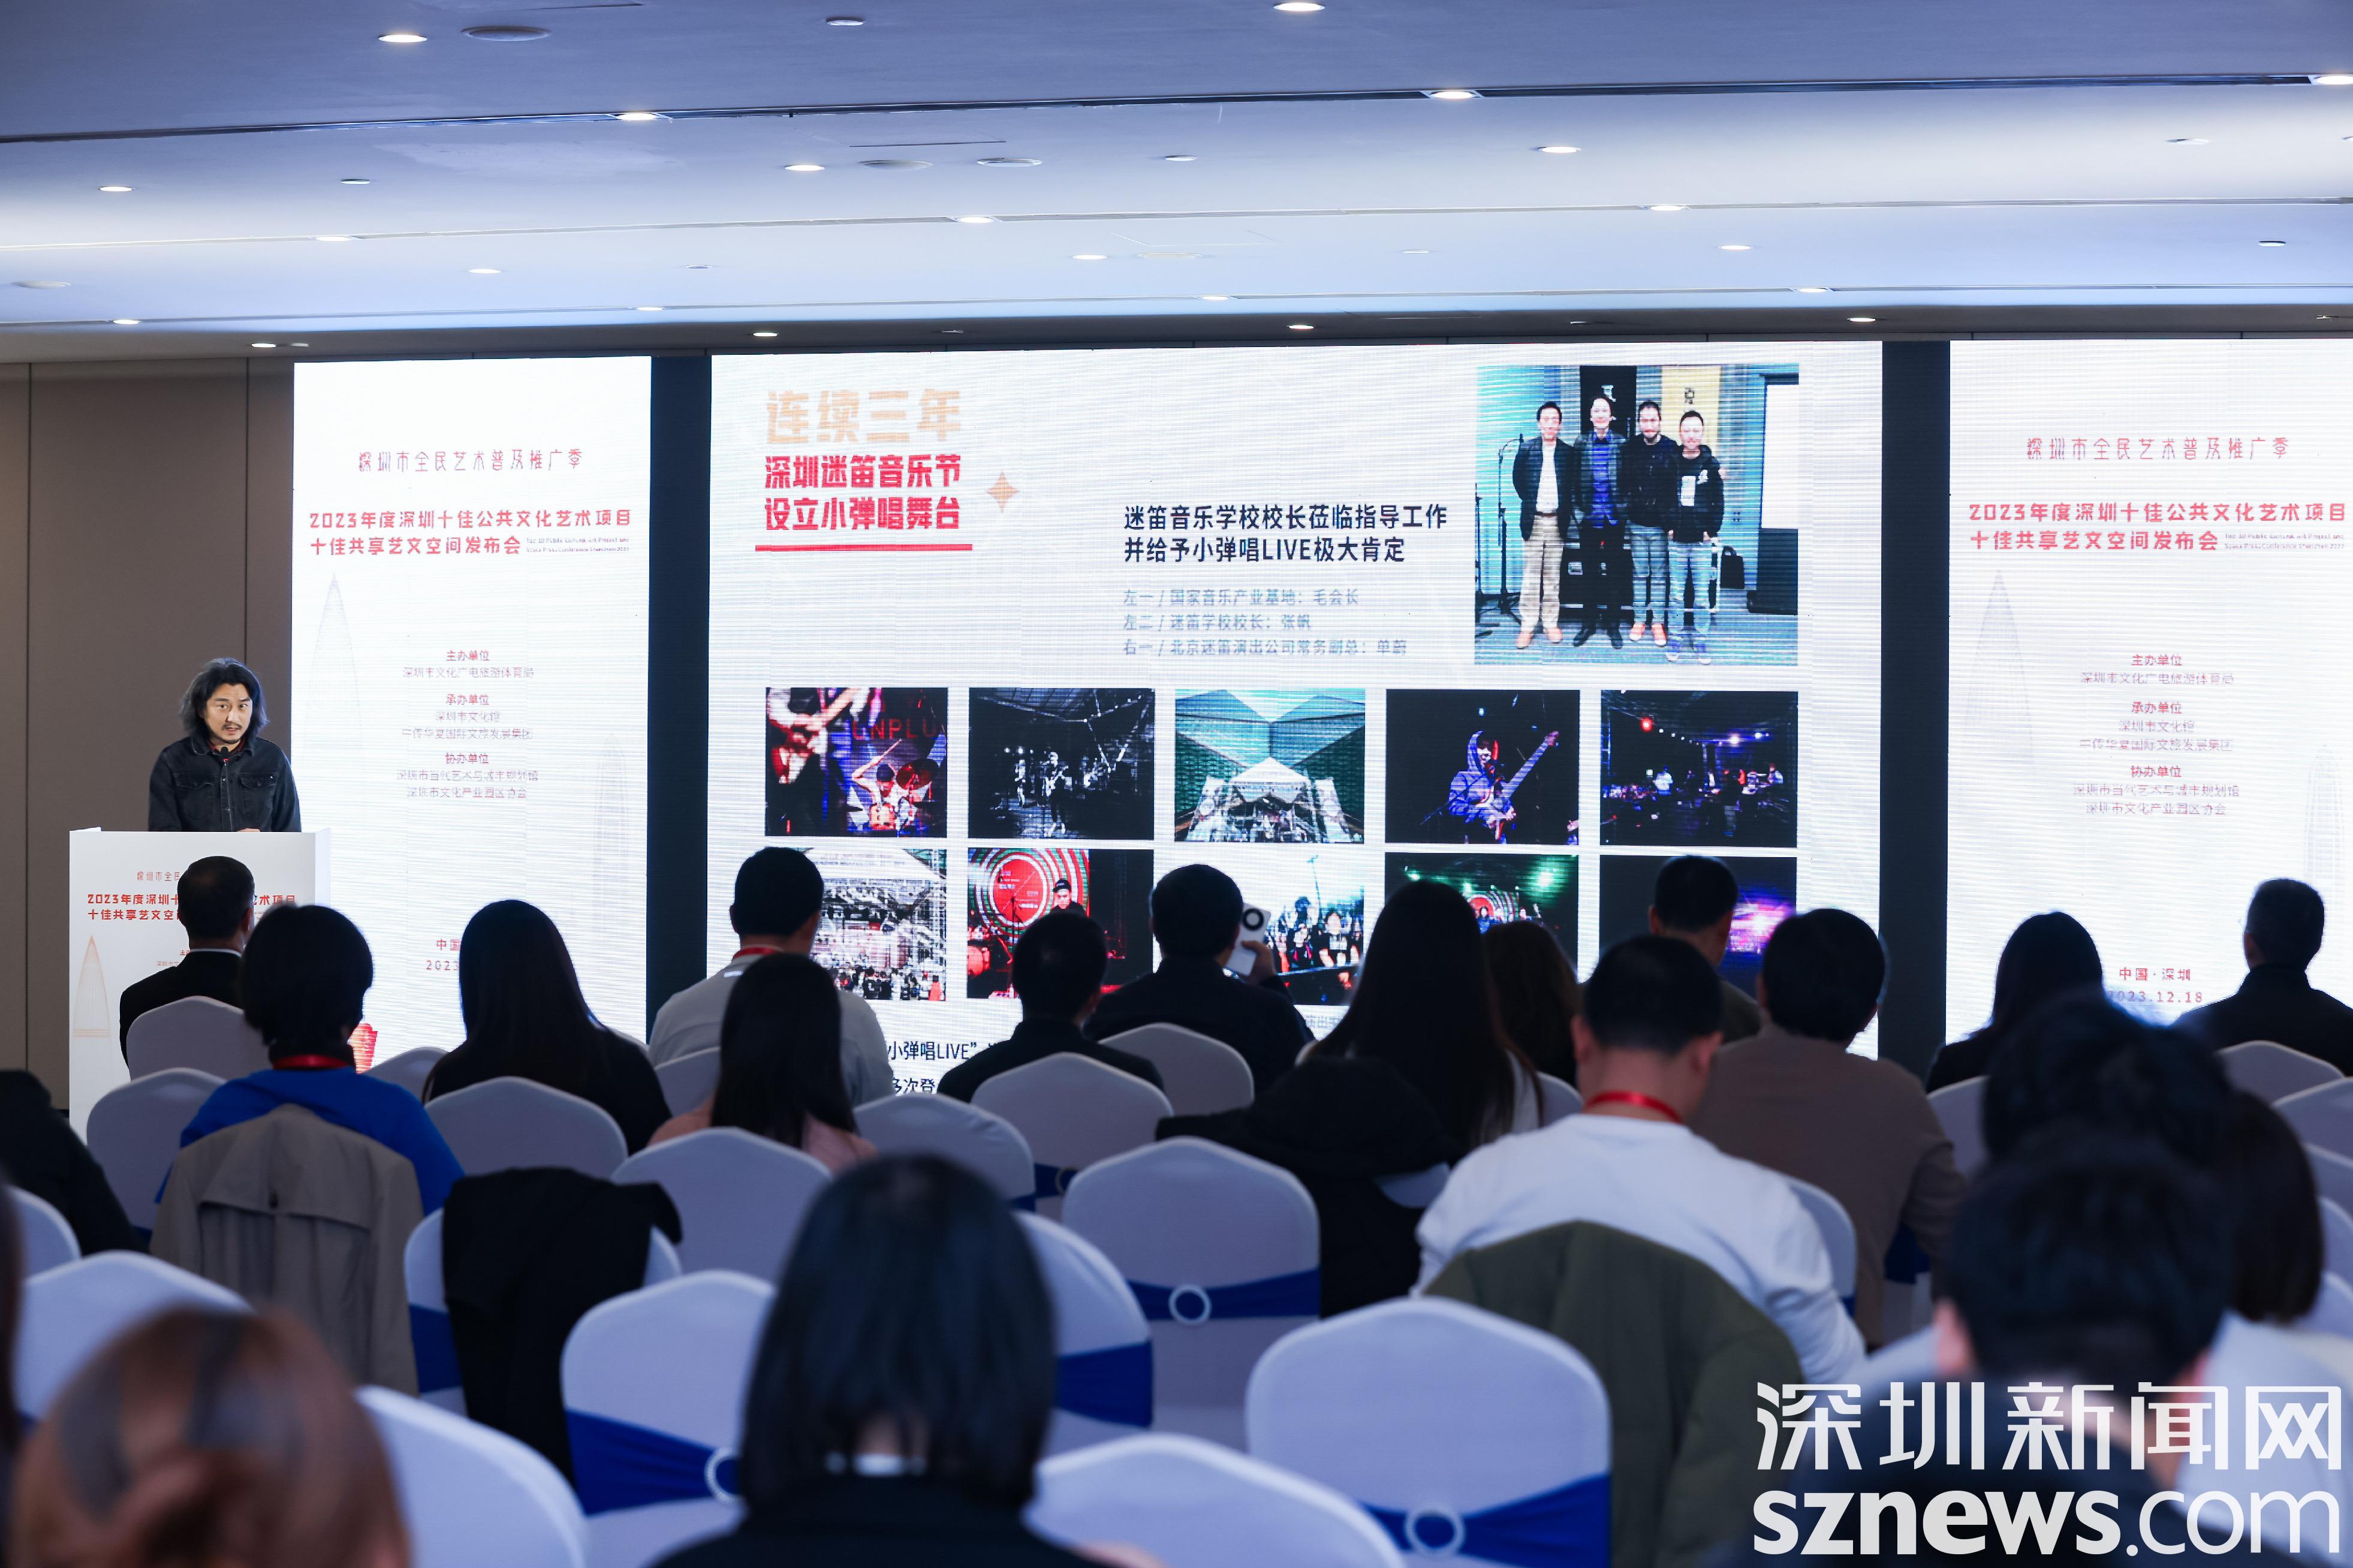 2023年度深圳十佳公共文化艺术项目、十佳共享艺文空间揭晓